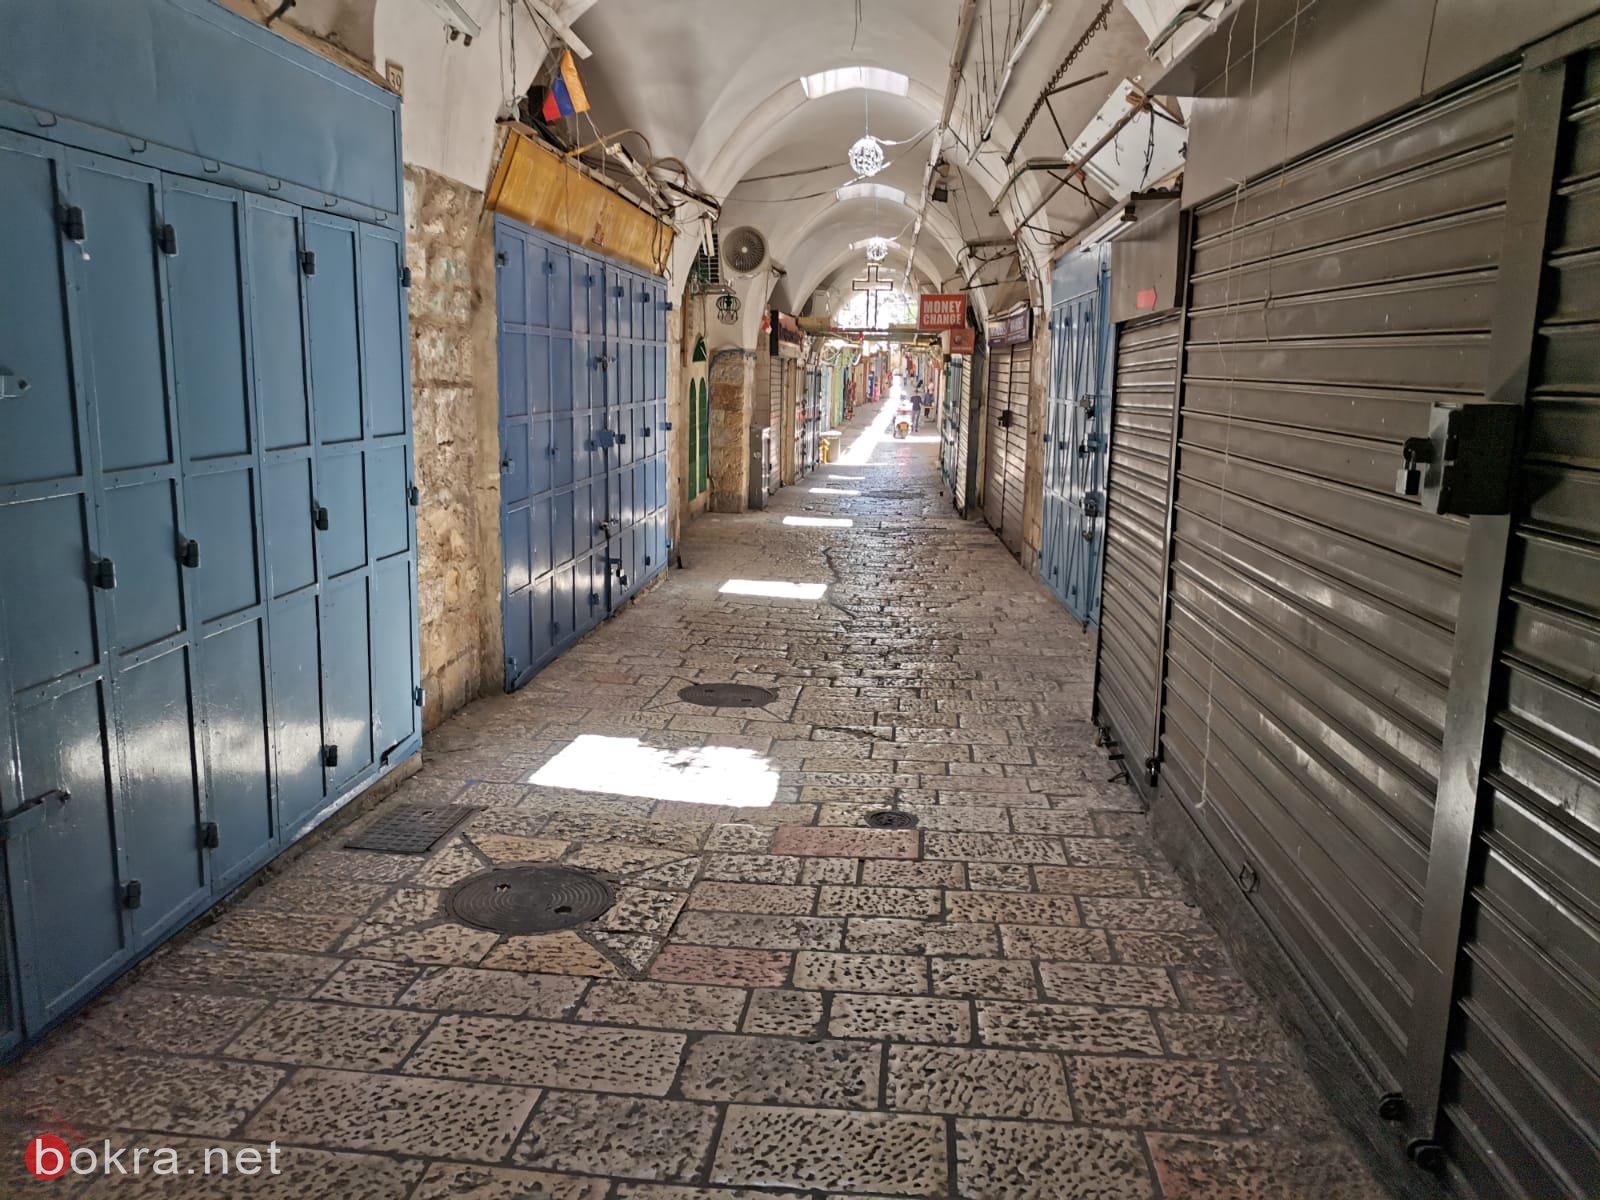   عشية العيد : أسواق القدس القديمة حزينة وخالية-16